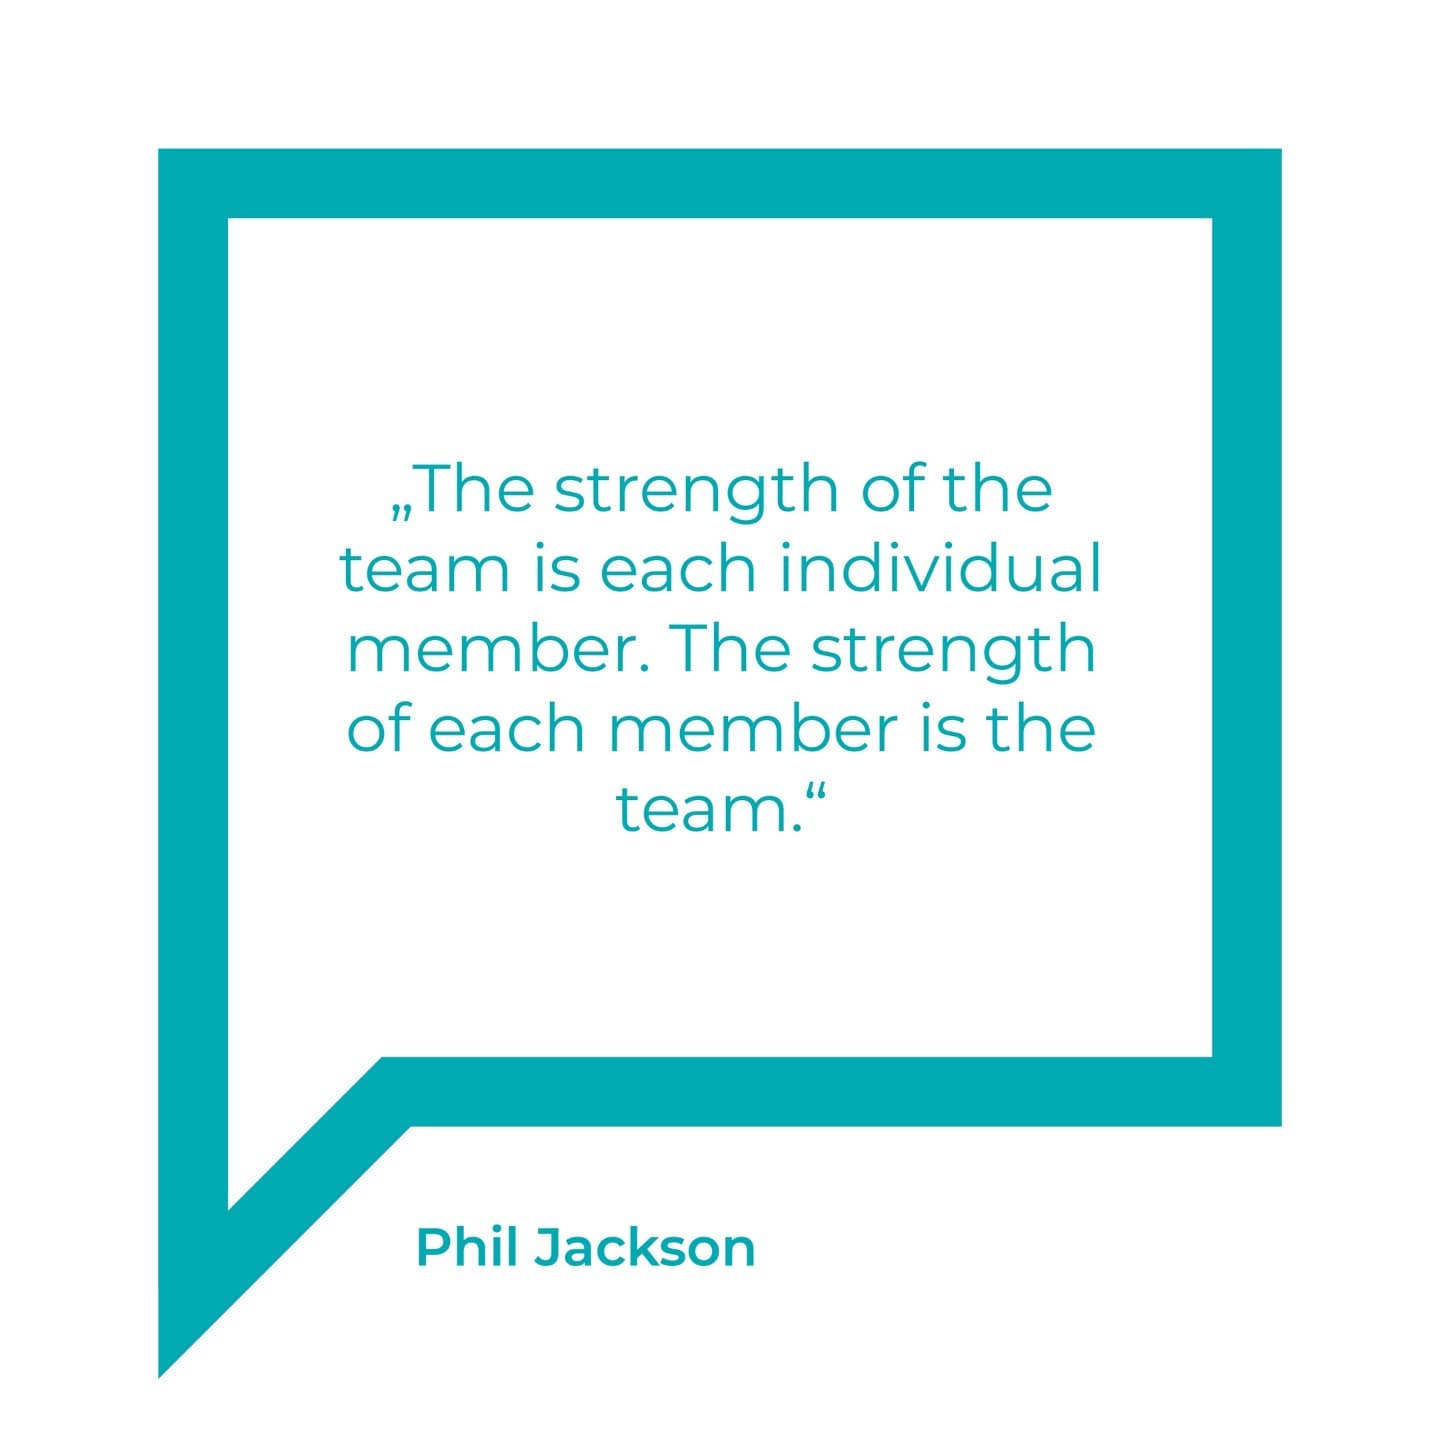 Wie gut funktionieren eure Teams im Unternehmen? 🤔⁠
⁠
#teamwork #teamworkmakethedreamwork #individual #quotes